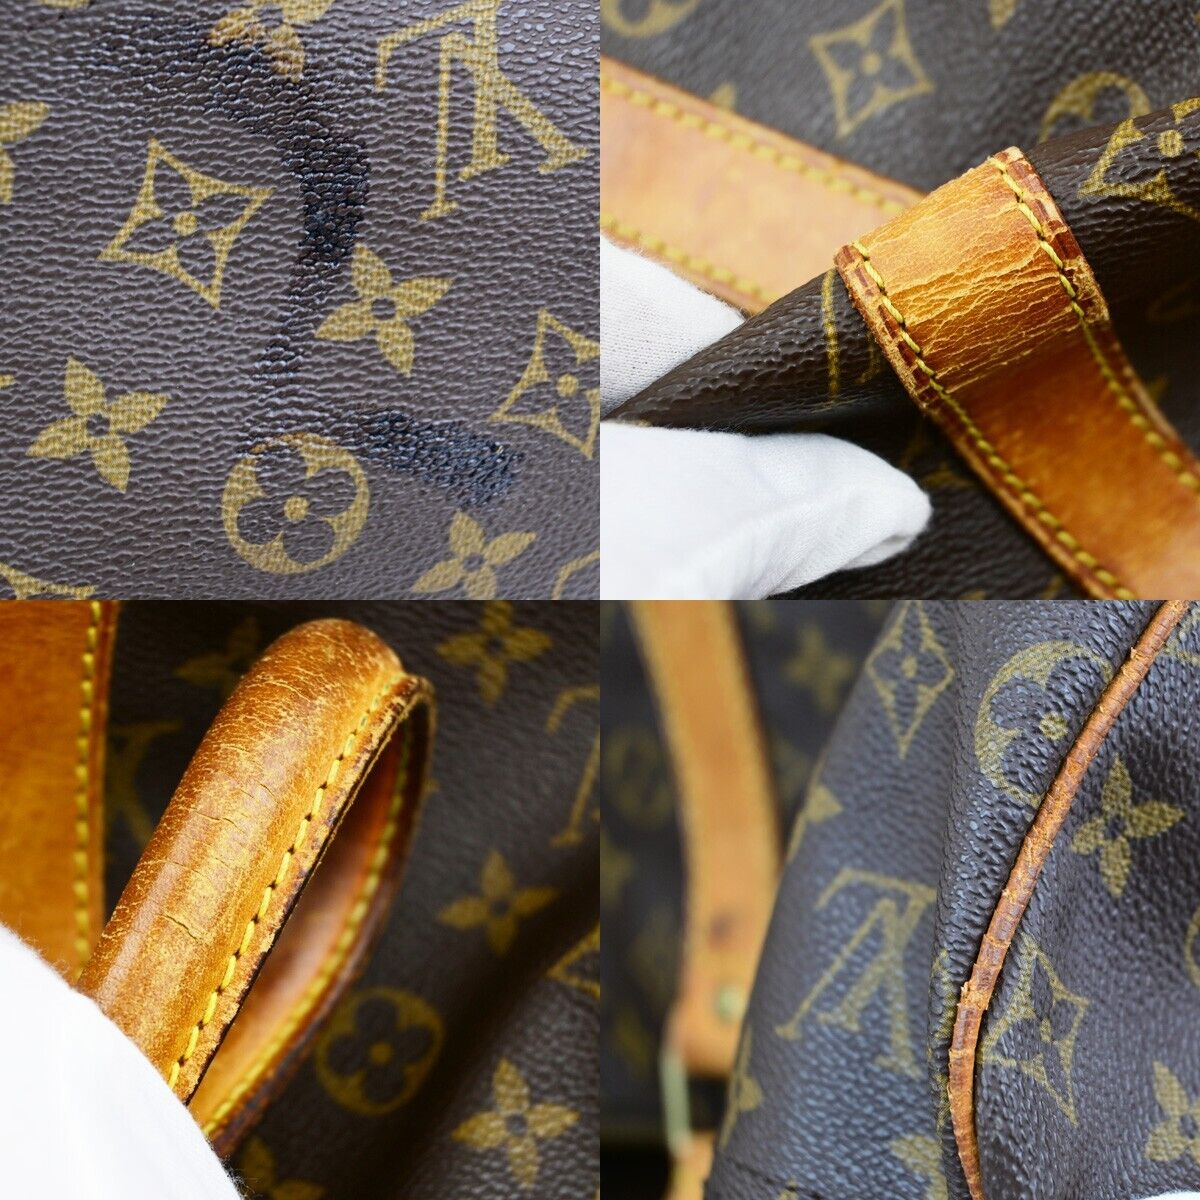 Original/Auth Louis Vuitton - Keepall 55 Boston Tasche - Klassisch - Monogramm